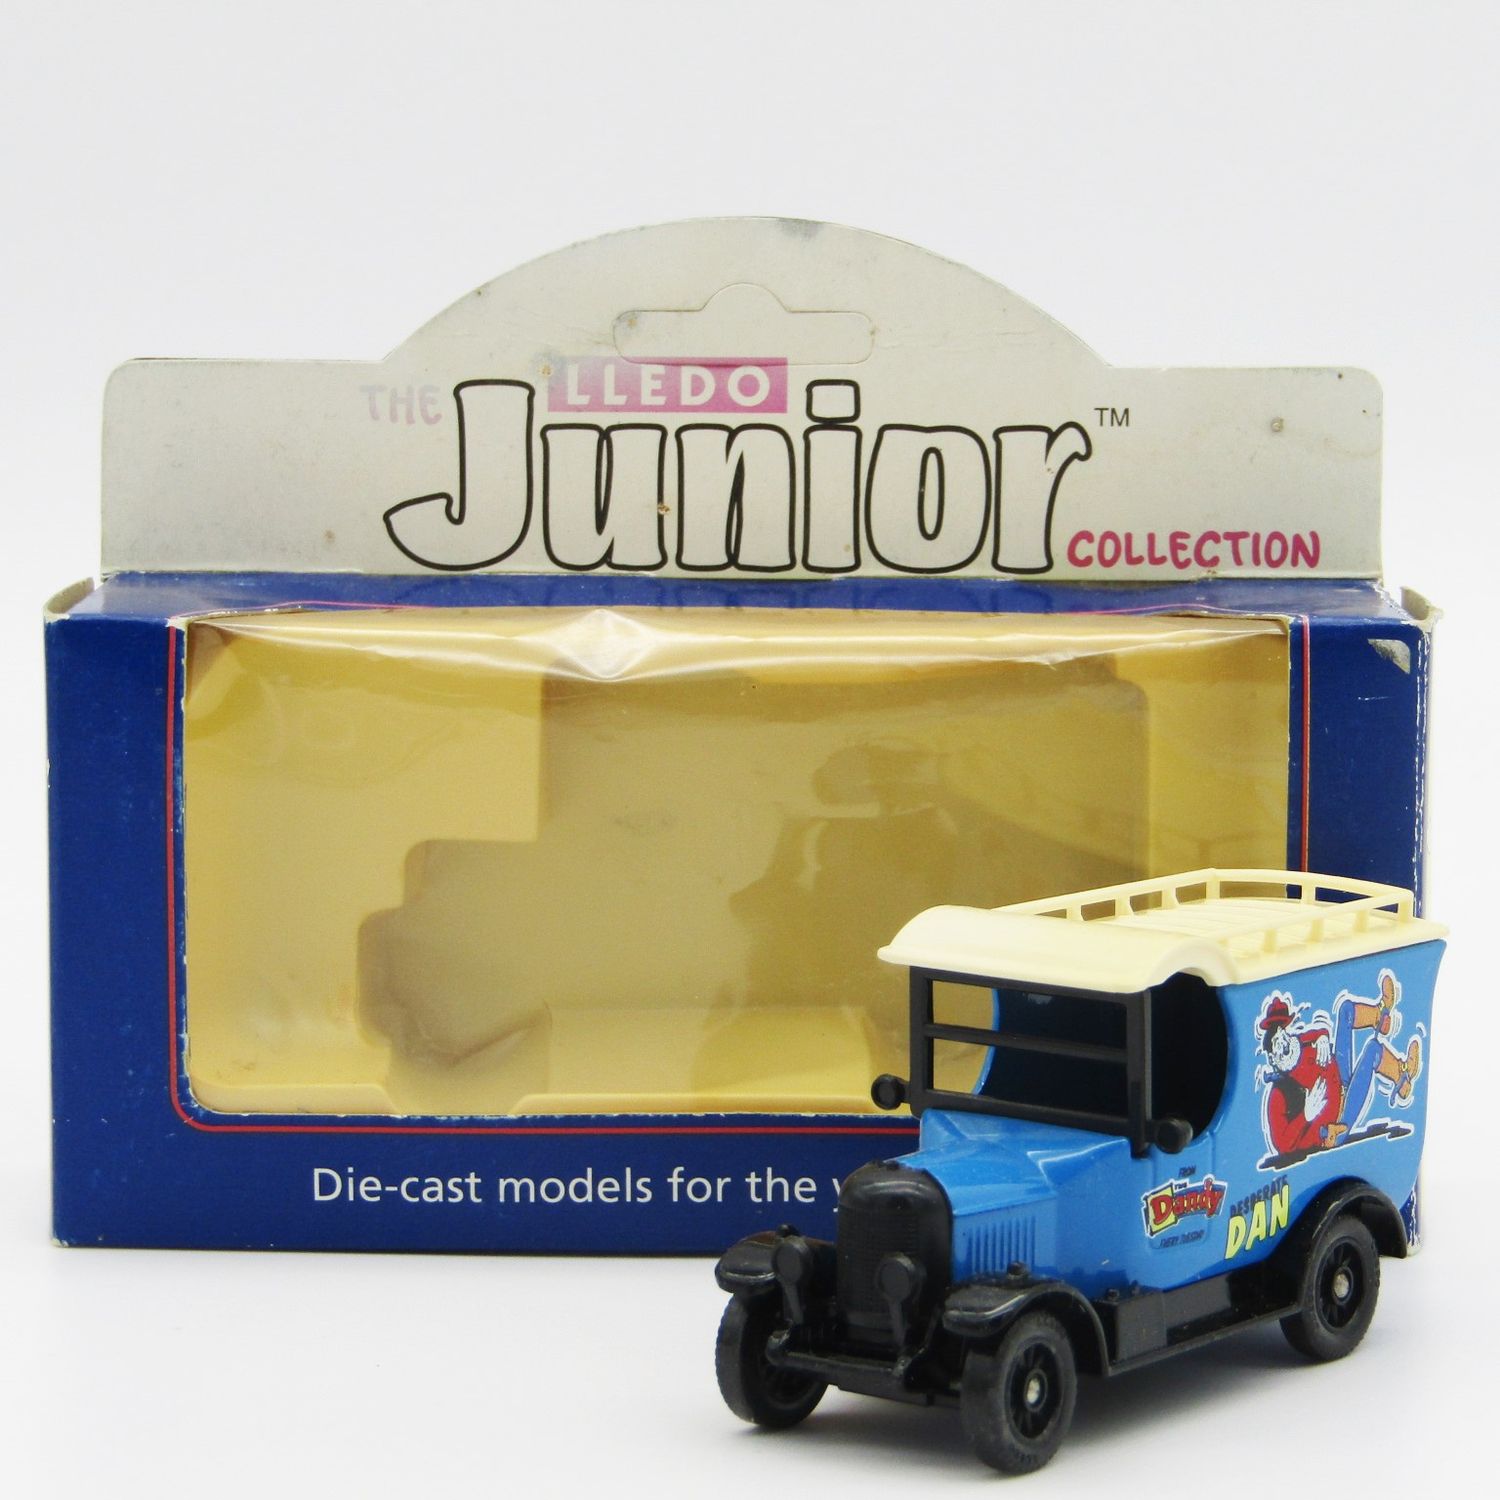 Lledo Junior collection Morris Van Dandy Desperate Dan model car in box